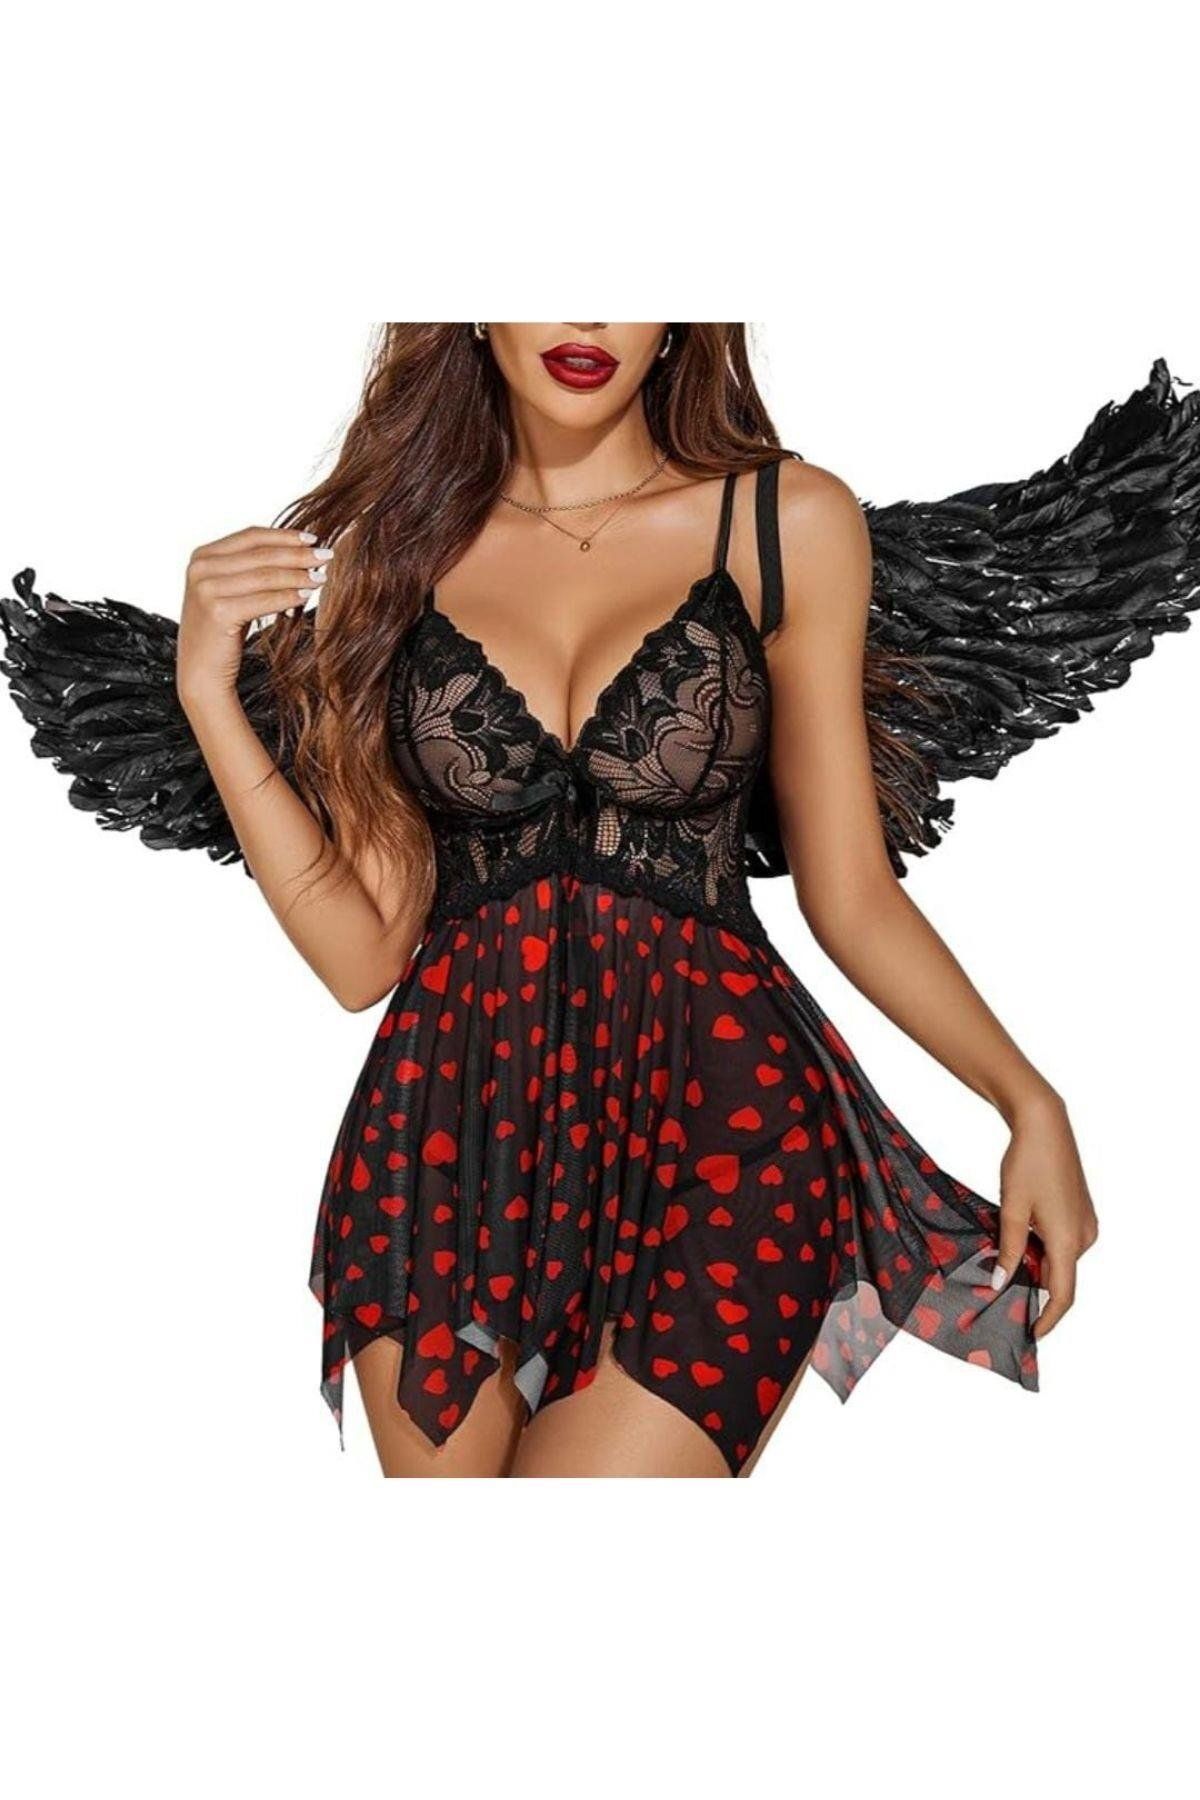 Midnight Dress Siyah Göğüs Danel Etek Kırmızı Kalpli Seksi Ve Göz Alıcı Özel Tasarım Gecelik